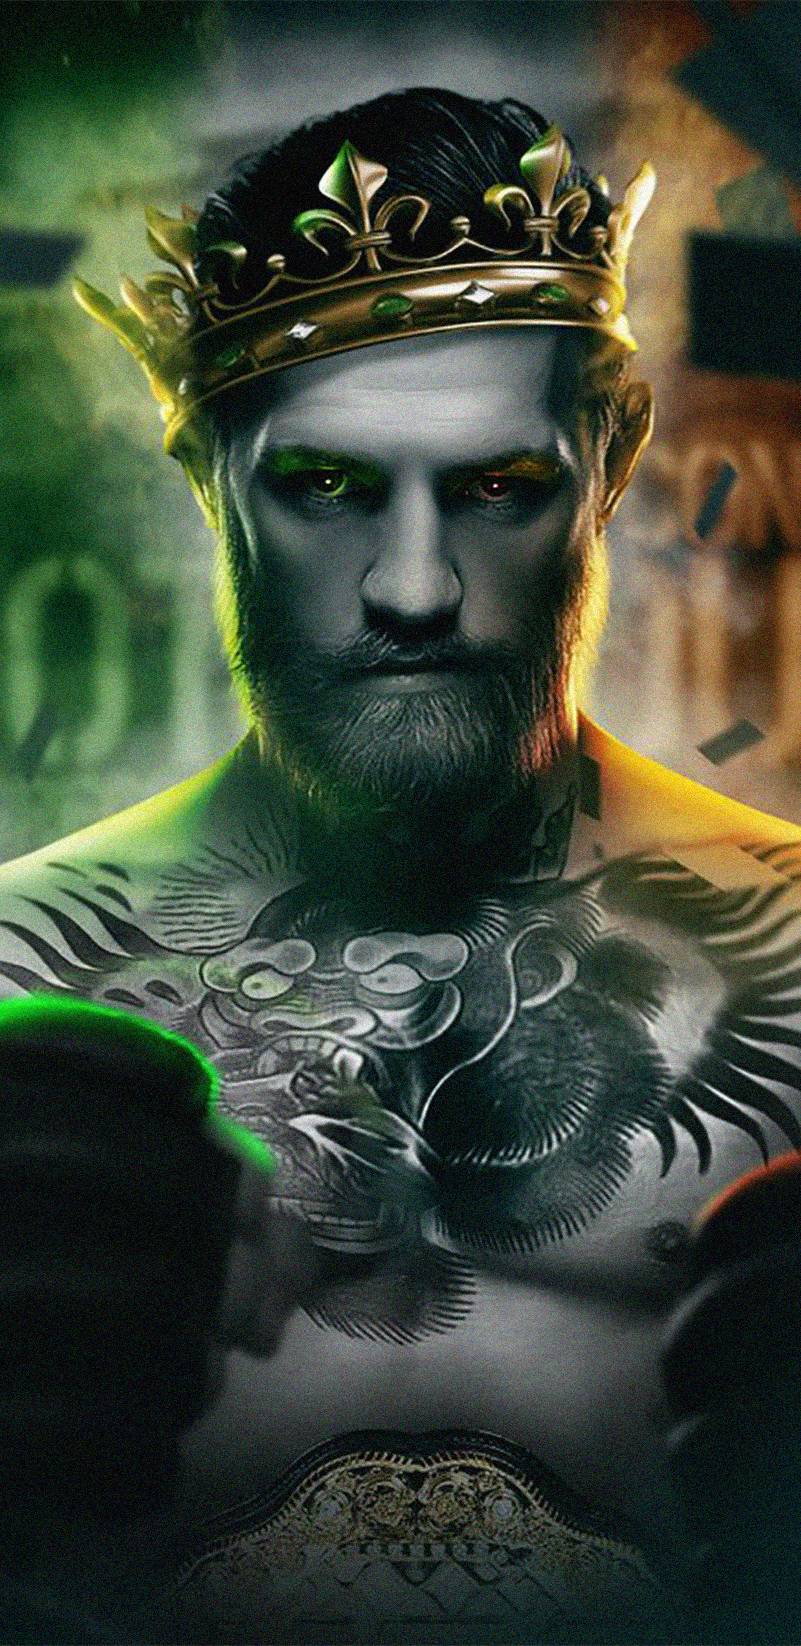 Conor McGregor 2020 wallpaper